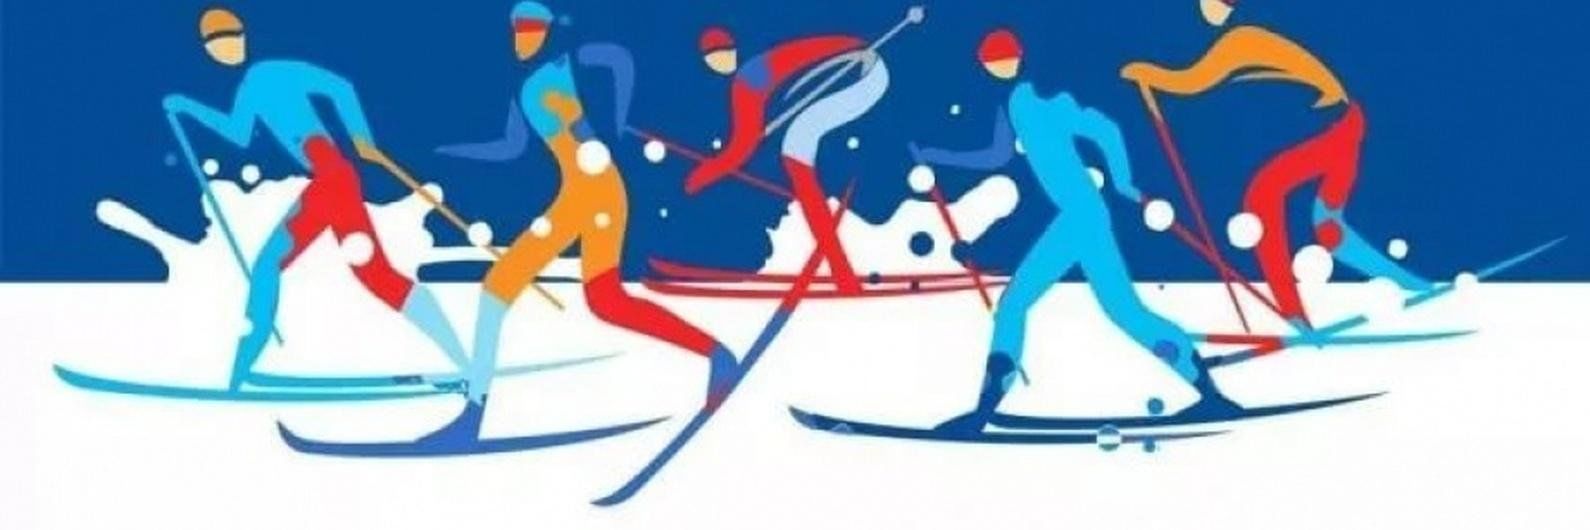 Лыжные соревнования рисунок